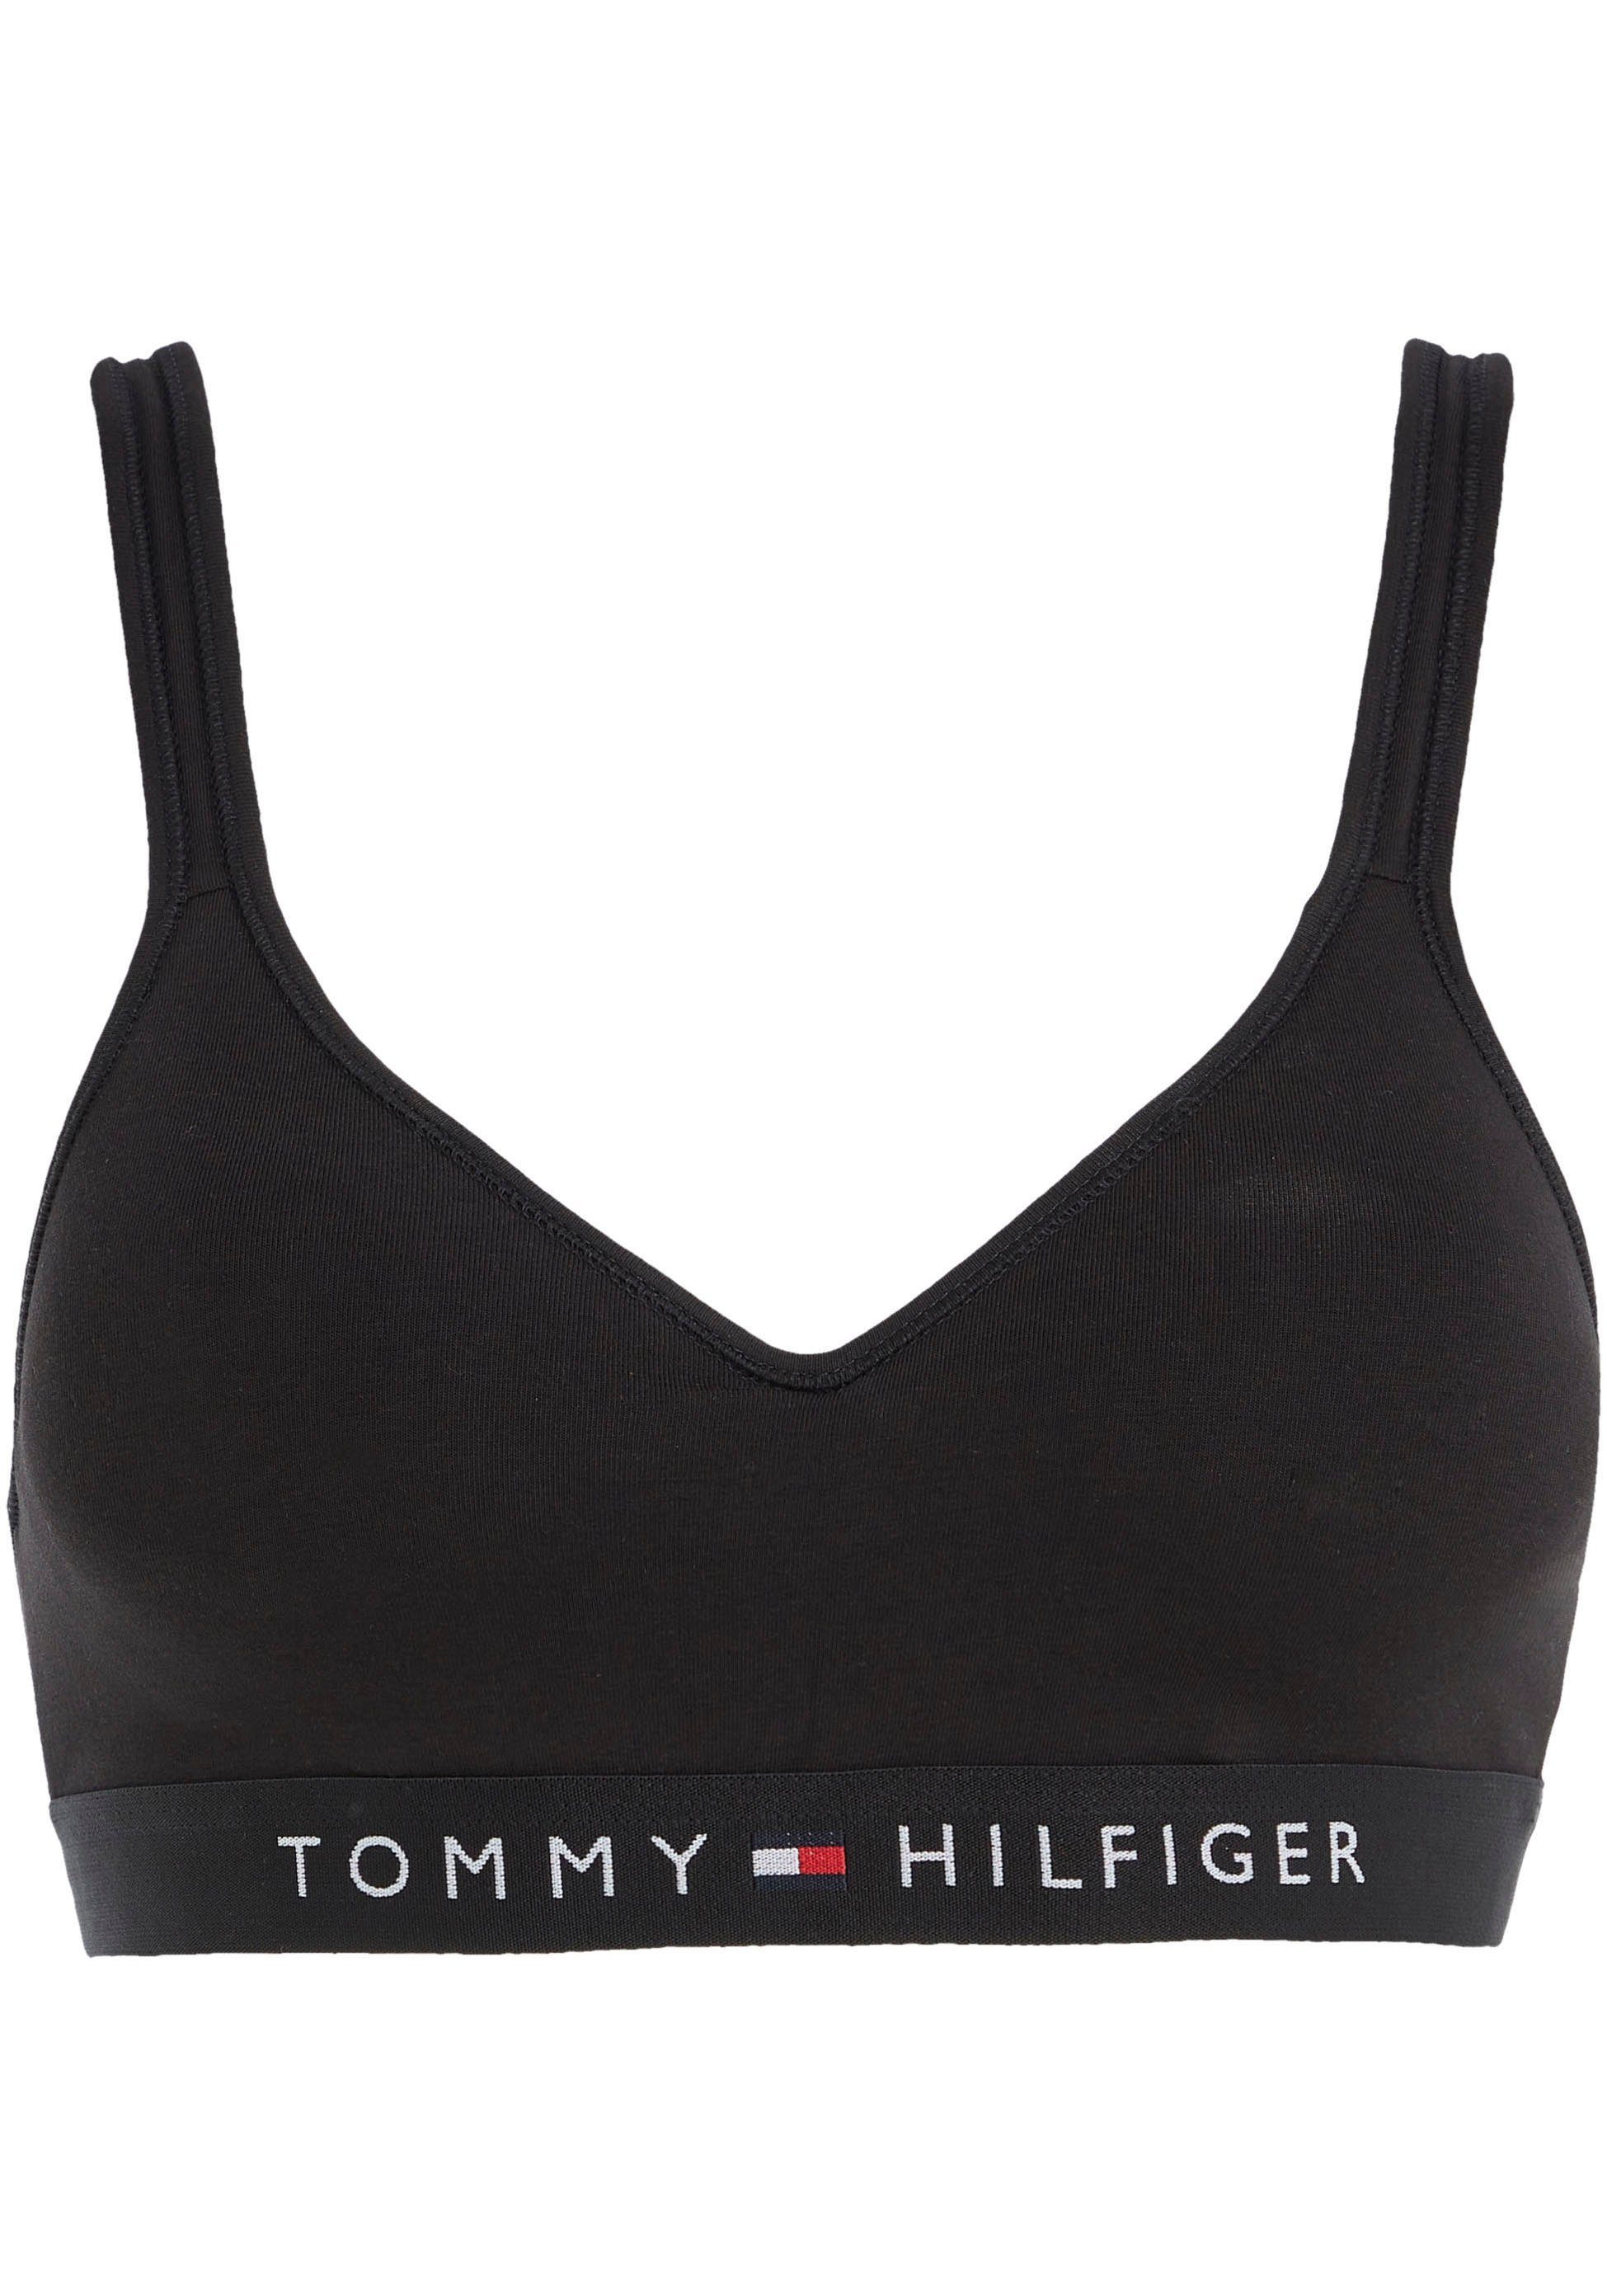 Underwear BRALETTE Markenlabel Tommy Hilfiger LIFT Hilfiger mit Tommy Black Bralette-BH